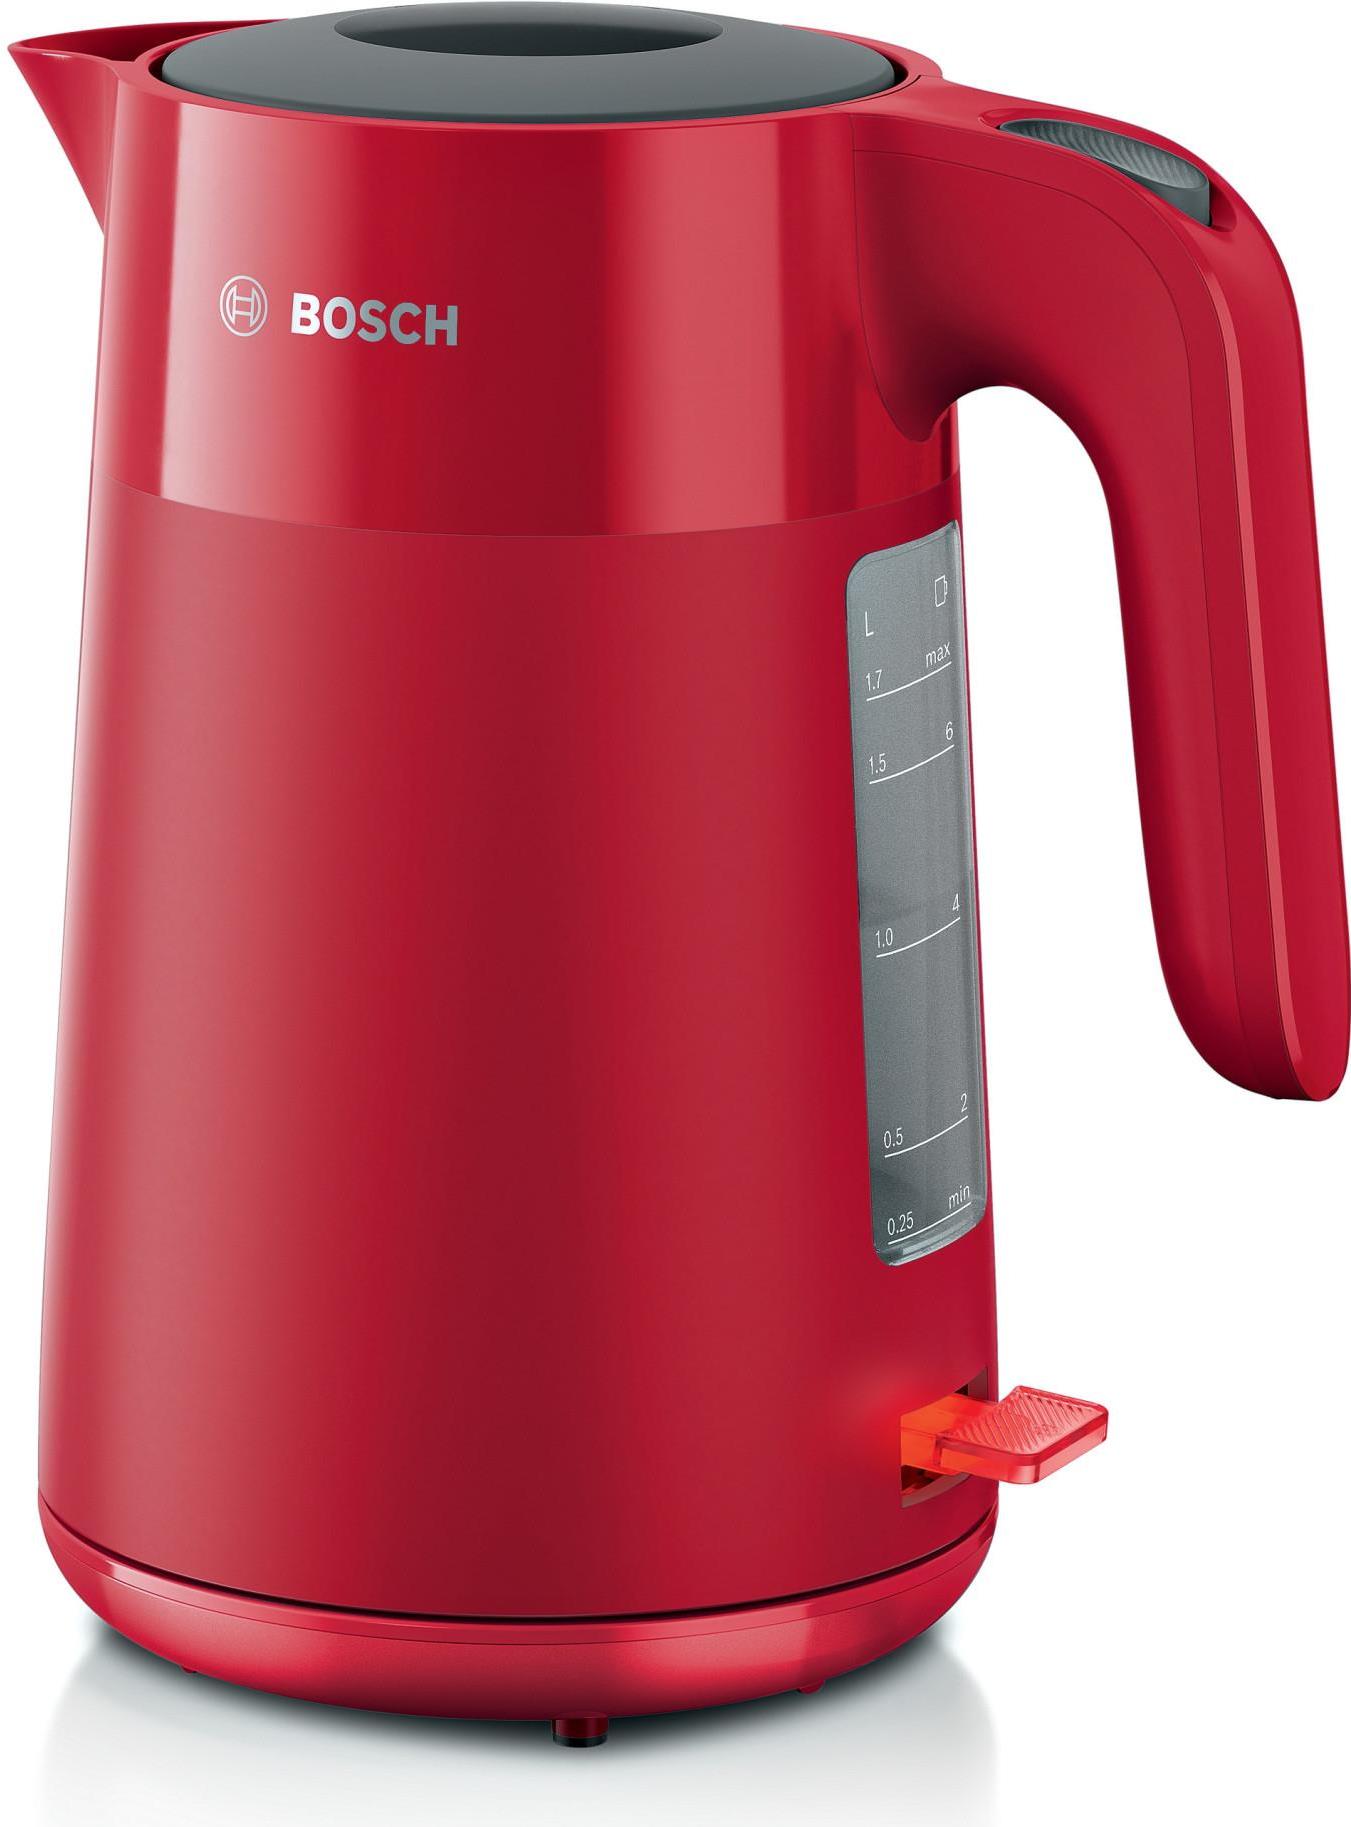 Bosch TWK2M164. Fassungsvermögen Wassertank: 1,7 l. Leistung: 2400 W. Produktfarbe: Schwarz, Grau, Rot, Gehäusematerial: Kunststoff, Wasserstandsanzeige, Überhitzungsschutz, Filterung (TWK2M164)